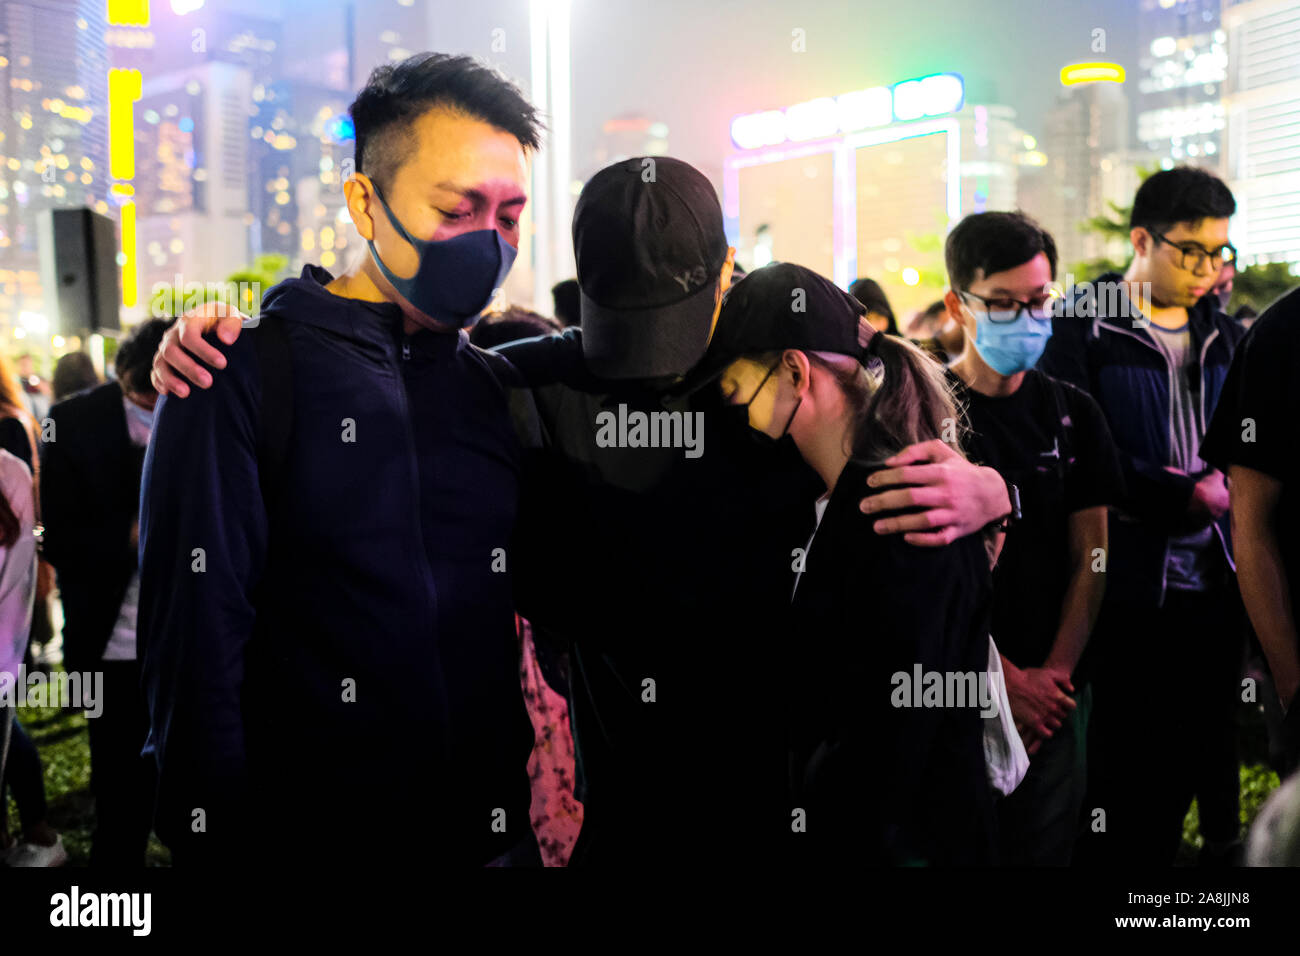 Jede demonstranten Hug andere während der Rallye. Memorial Rally auf Tamar Park in Hongkong der Tod eines 22 Jahre alten Universität Student zu trauern, Alex Chow Tsz Lok, die von einer schweren Hirnverletzung bei einem Sturz am November gestorben 4. Als die Polizei skirmished mit Demonstranten am vergangenen Wochenende. Er war in kritischem Zustand verlassen und starb, nachdem er einen Herzstillstand. Stockfoto